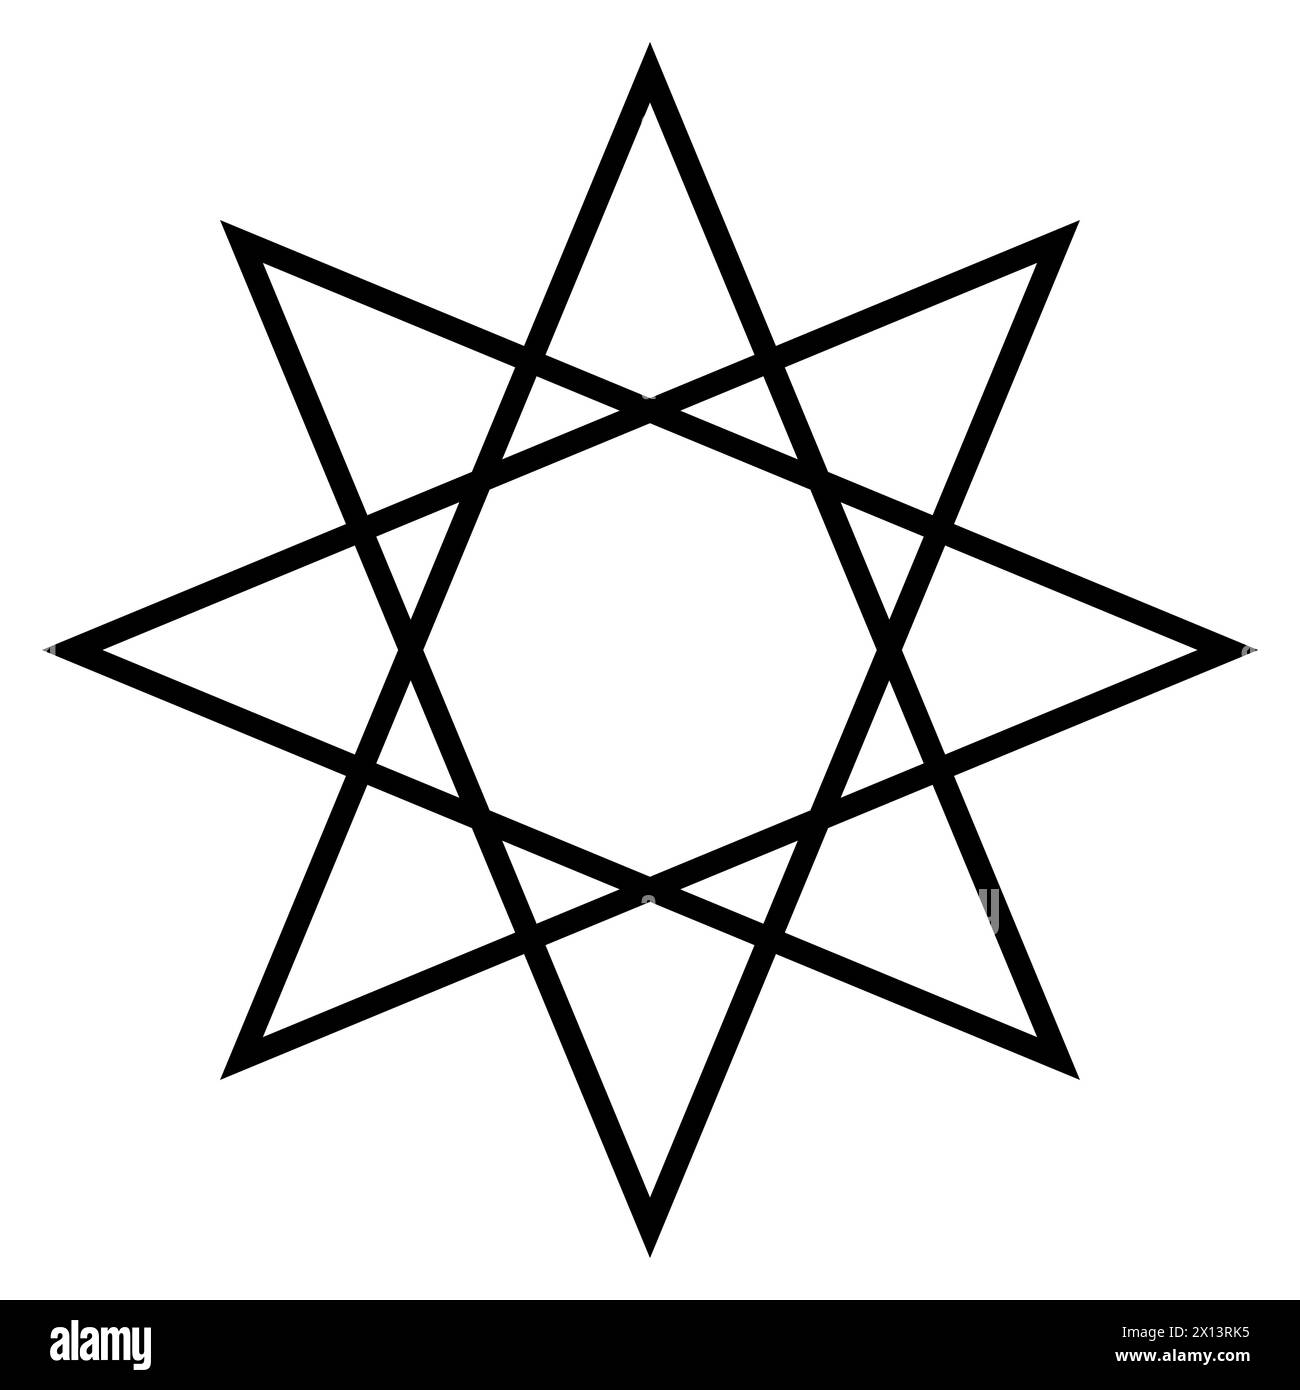 simbolo di forma ottagramma, illustrazione grafica vettoriale in bianco e nero di un poligono a stella a otto punte Illustrazione Vettoriale